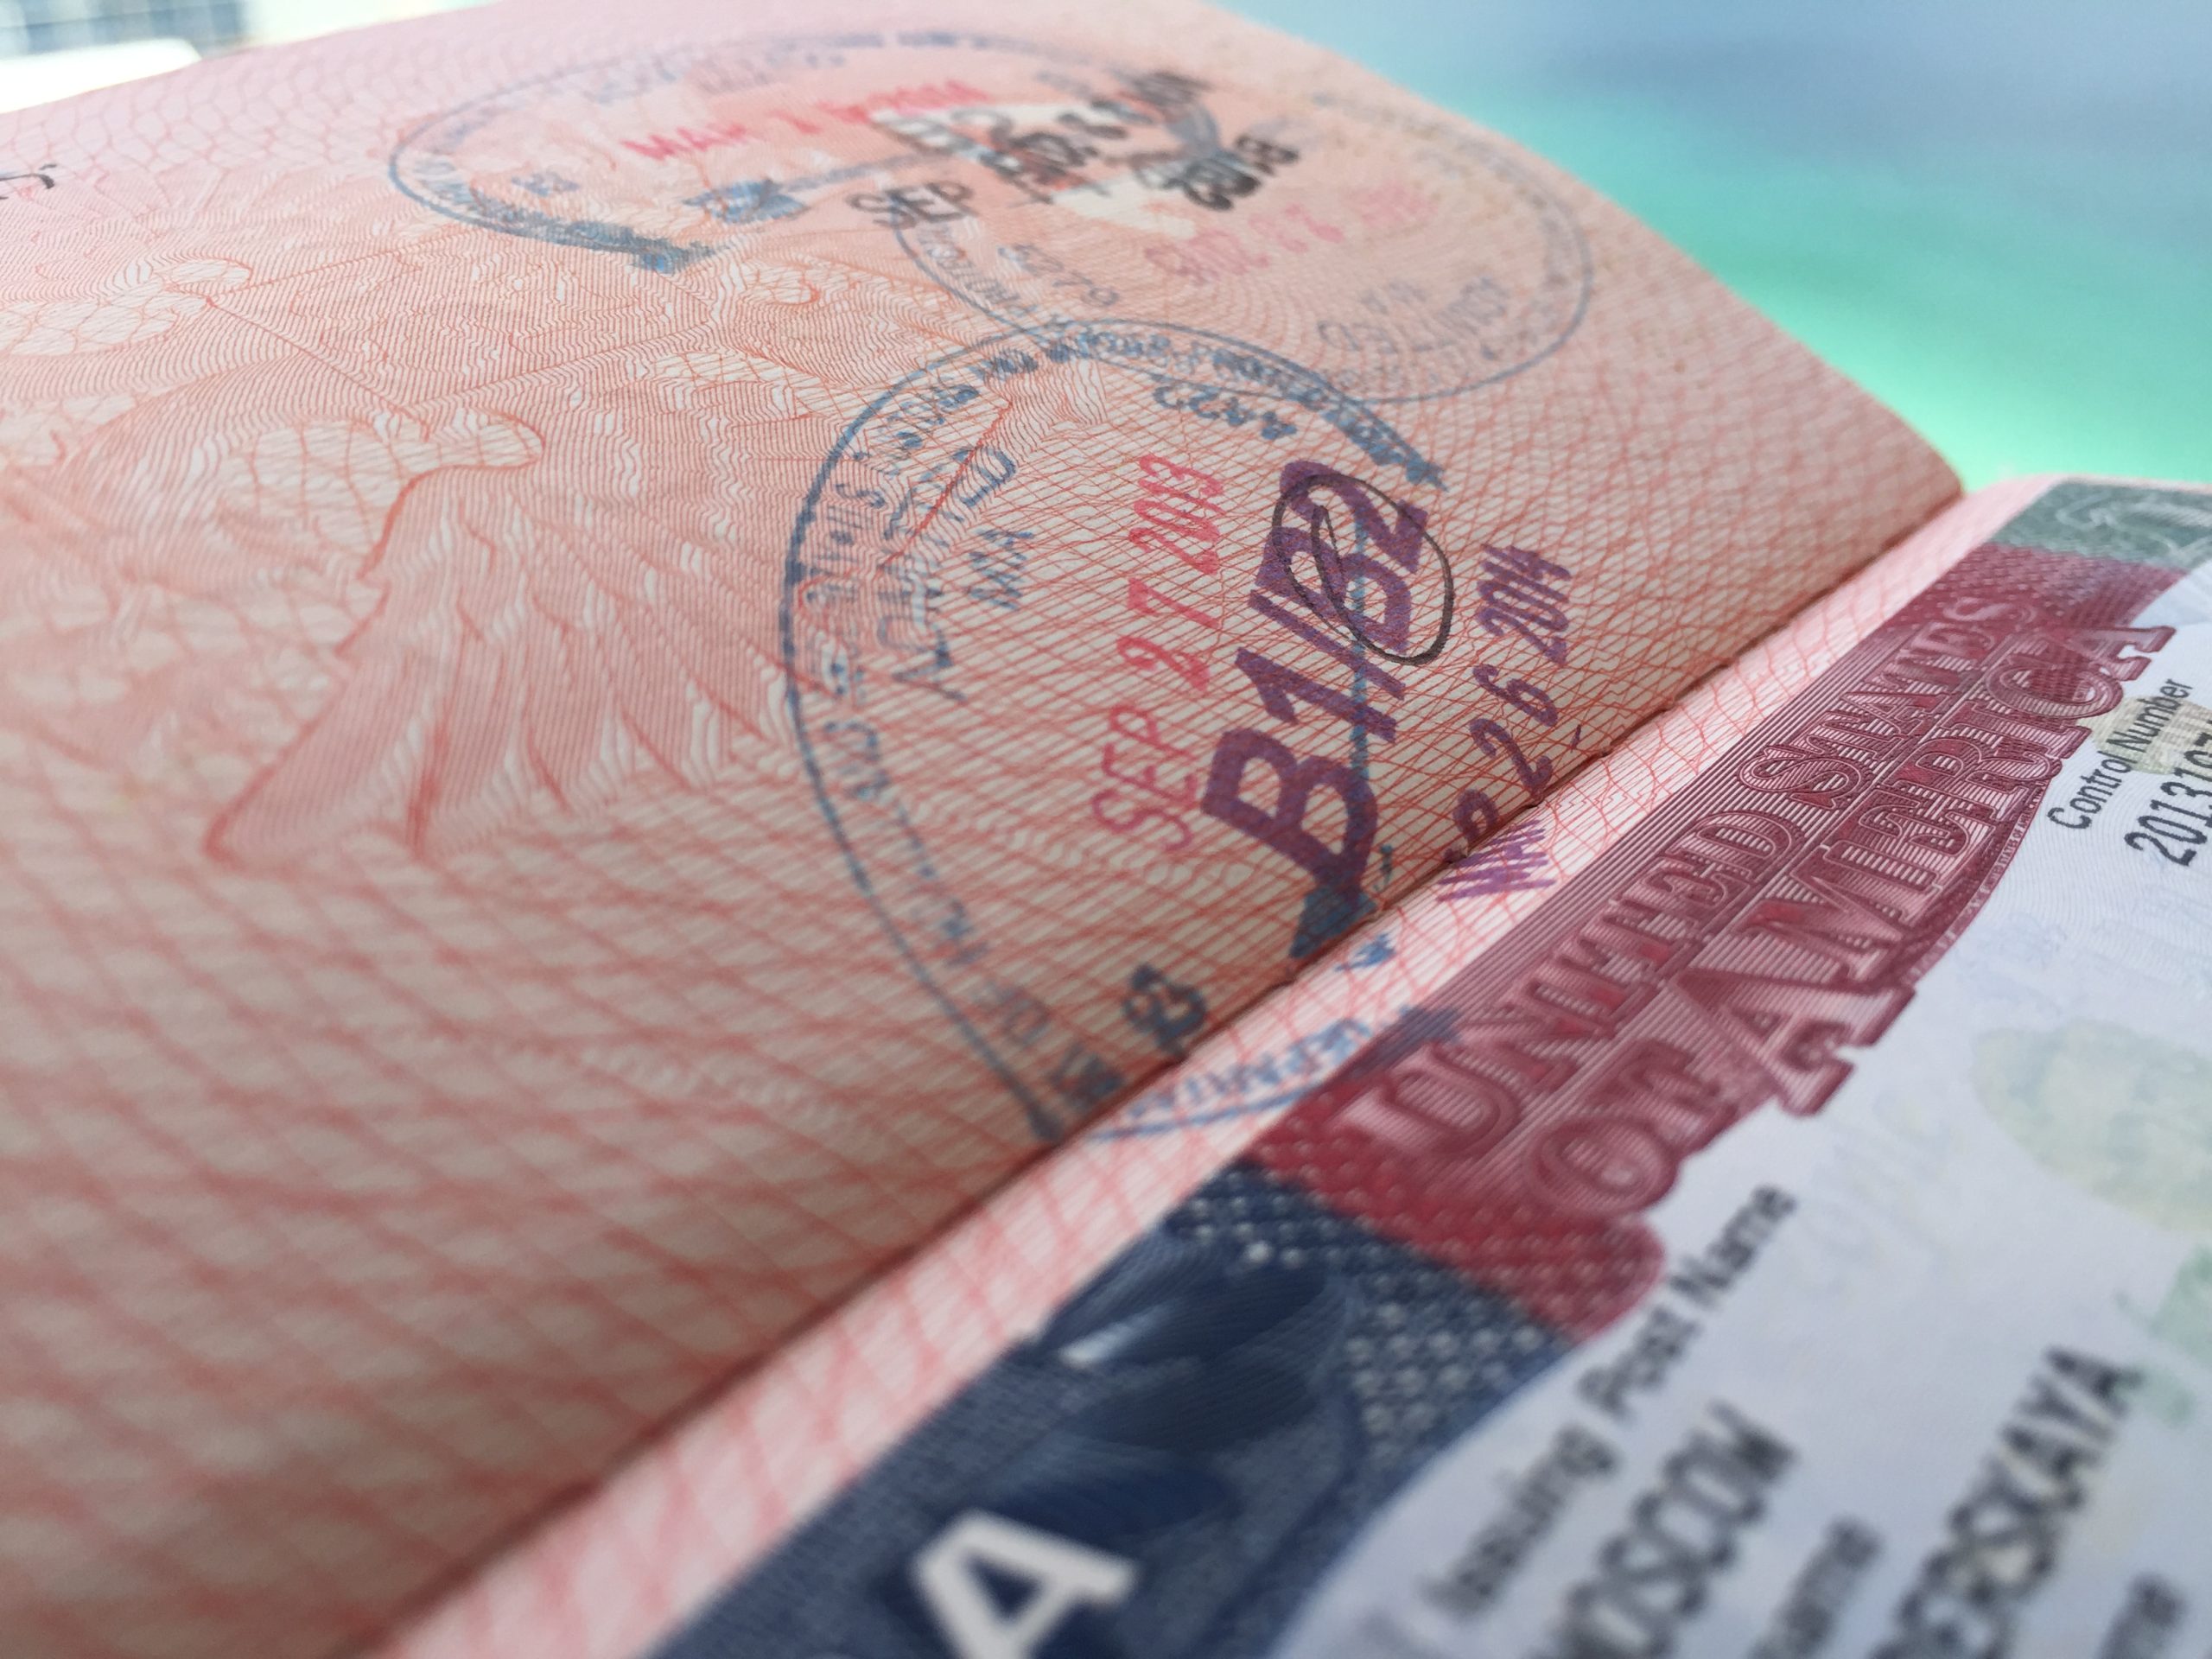 В Самарканде посадили преступную группу за мошенничество с визами США